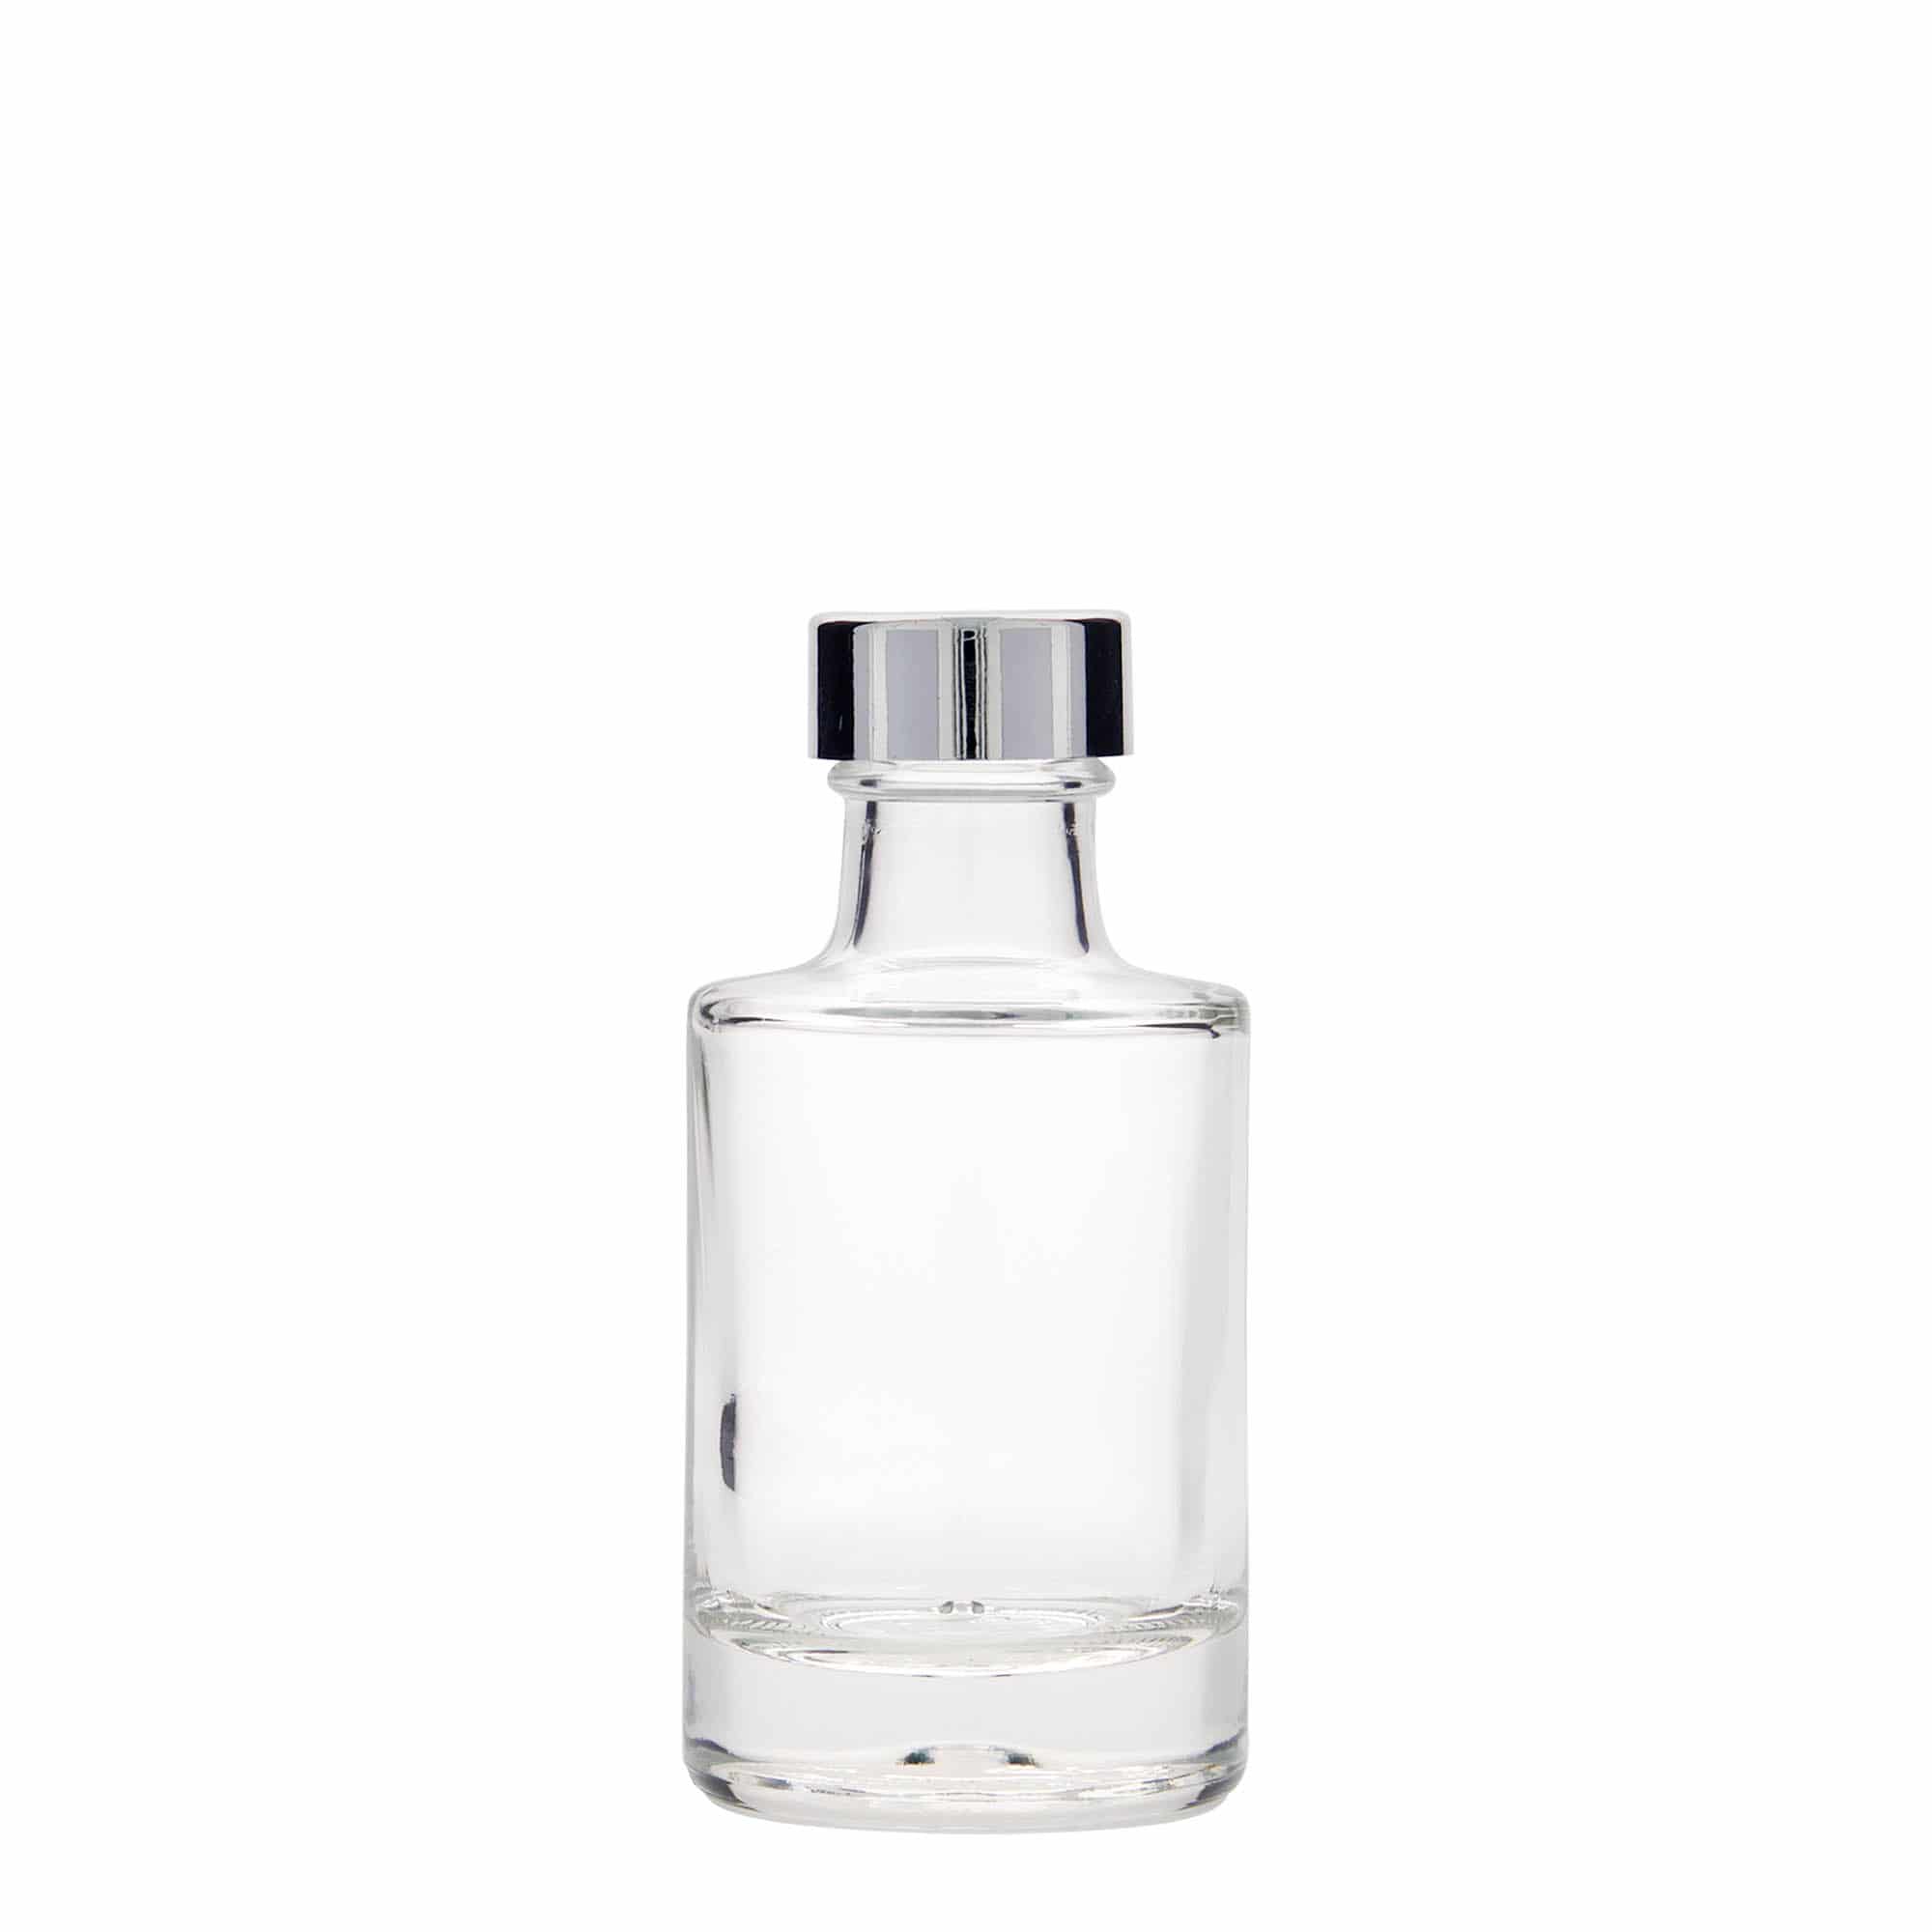 100 ml glass bottle 'Aventura', closure: GPI 28